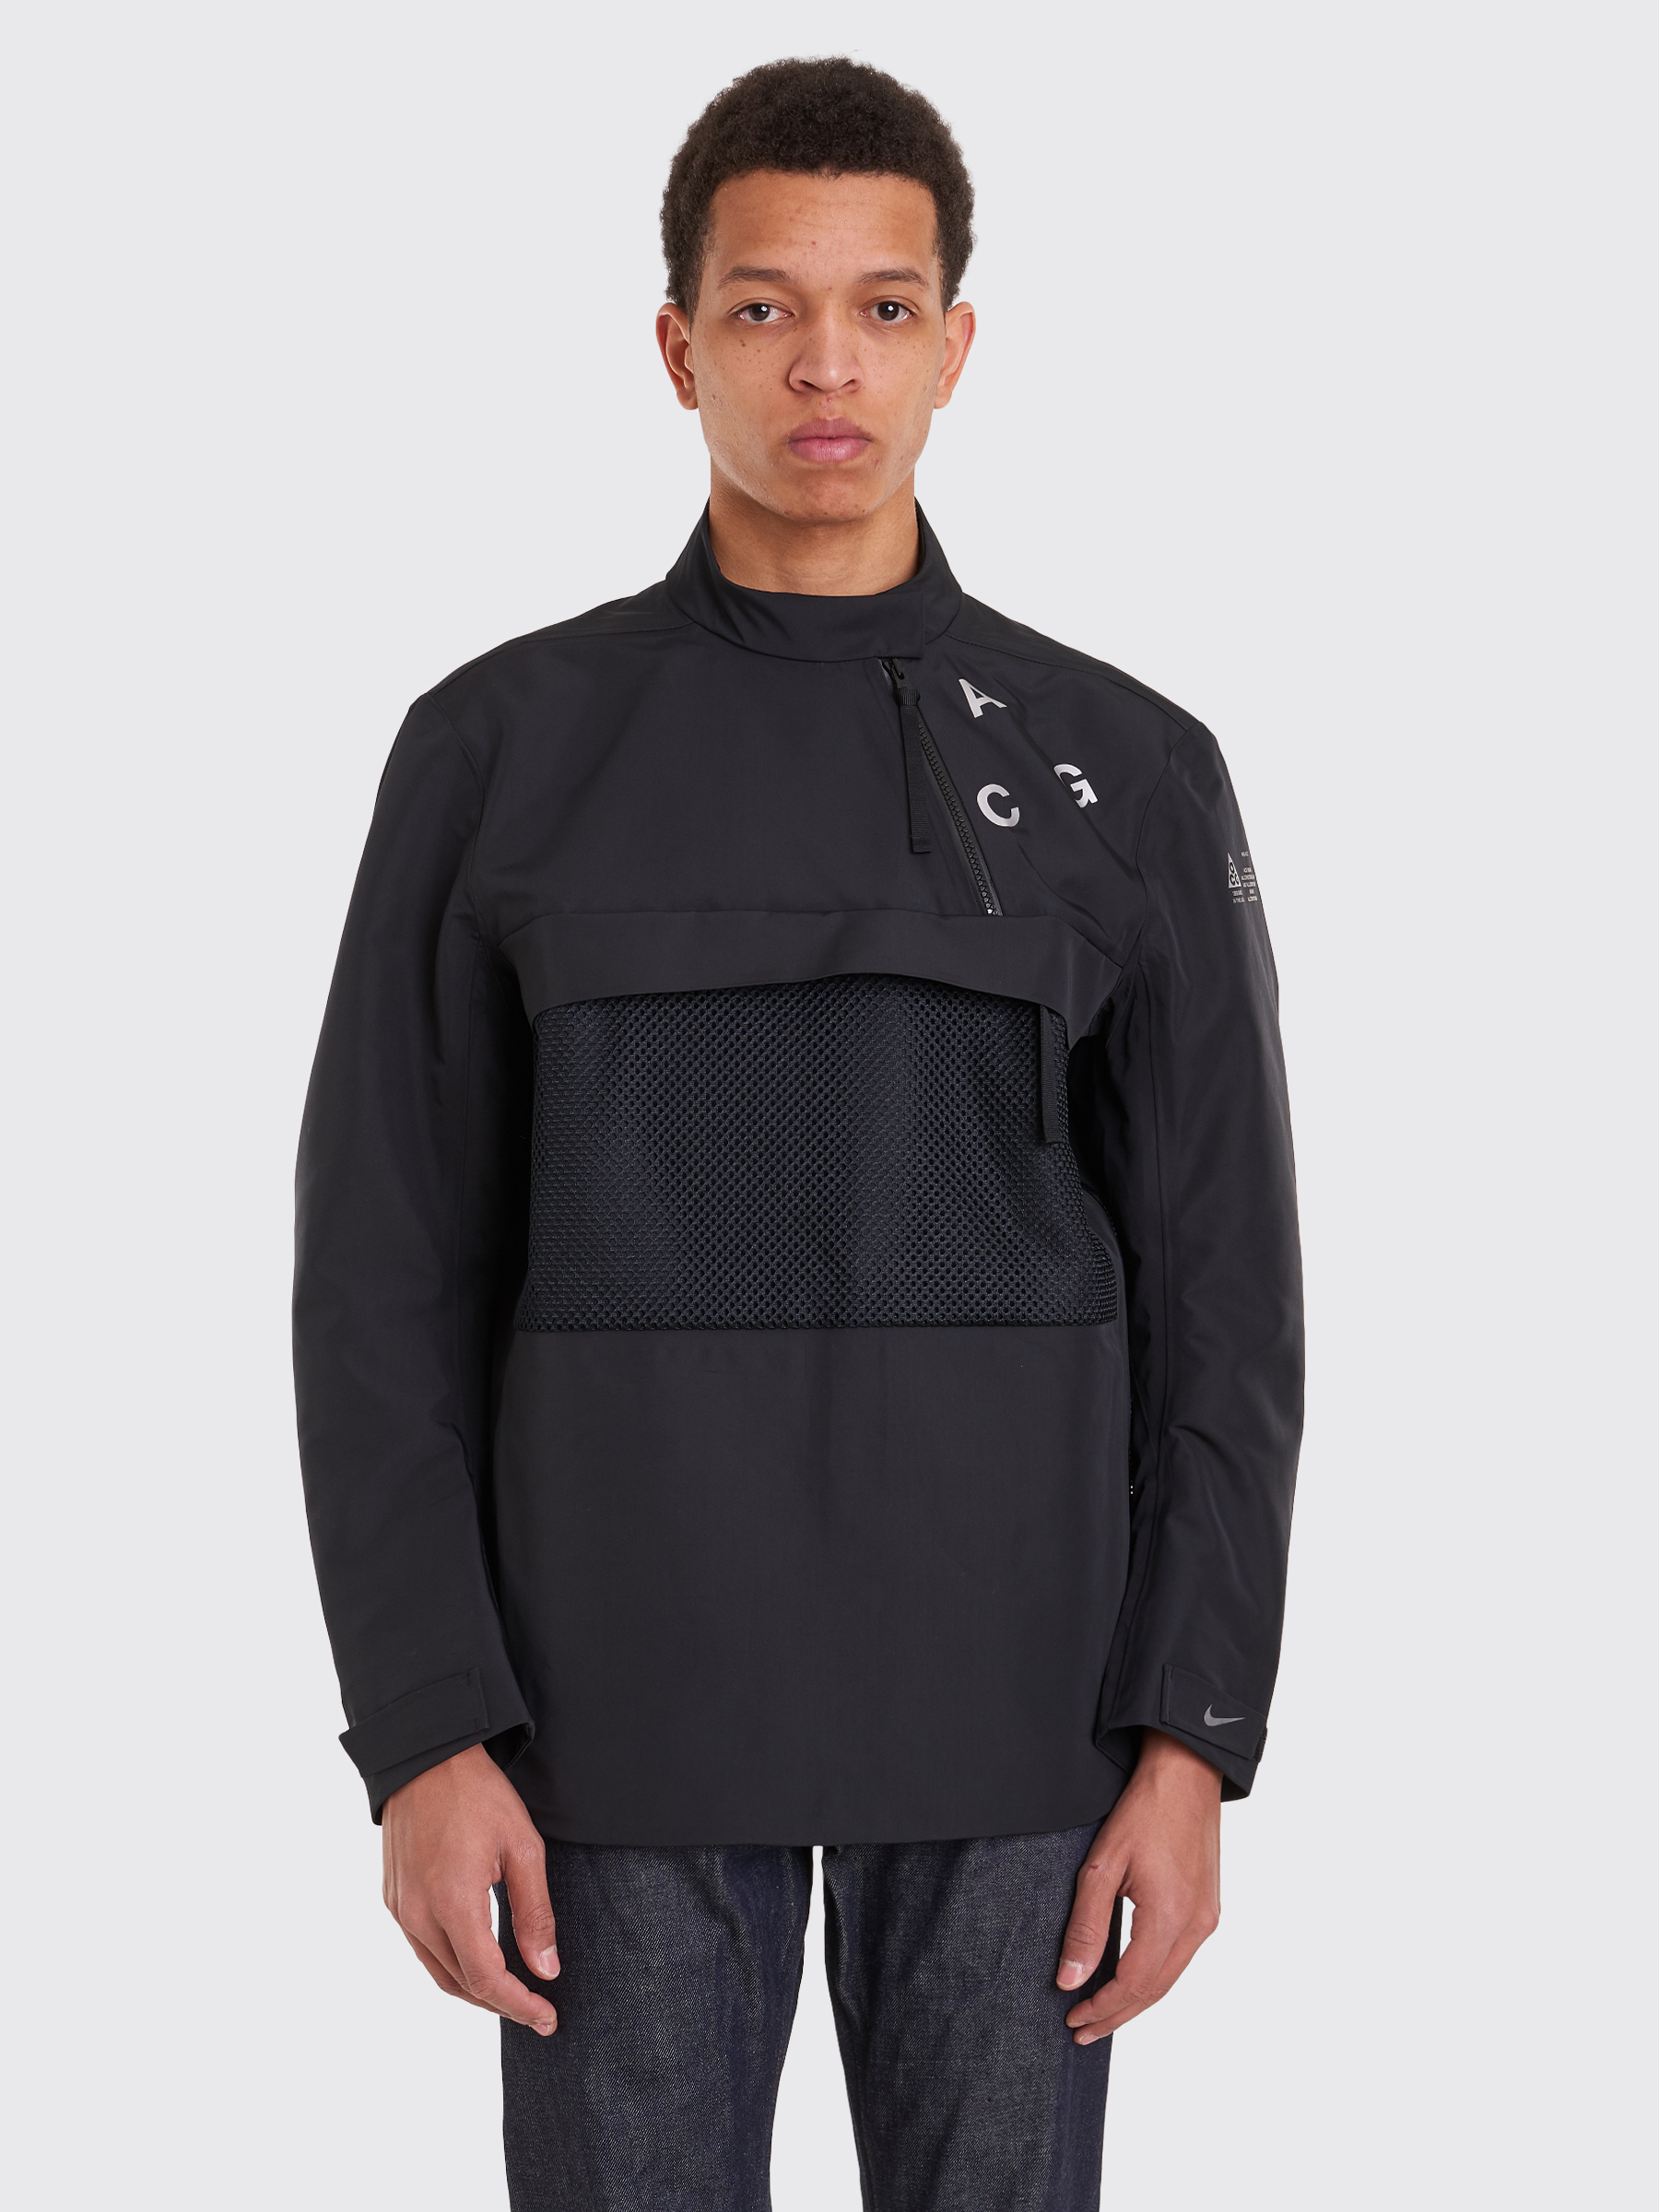 Very Goods | Nike Sportswear - ACG PO Shell Jacket Black | TRÈS BIEN